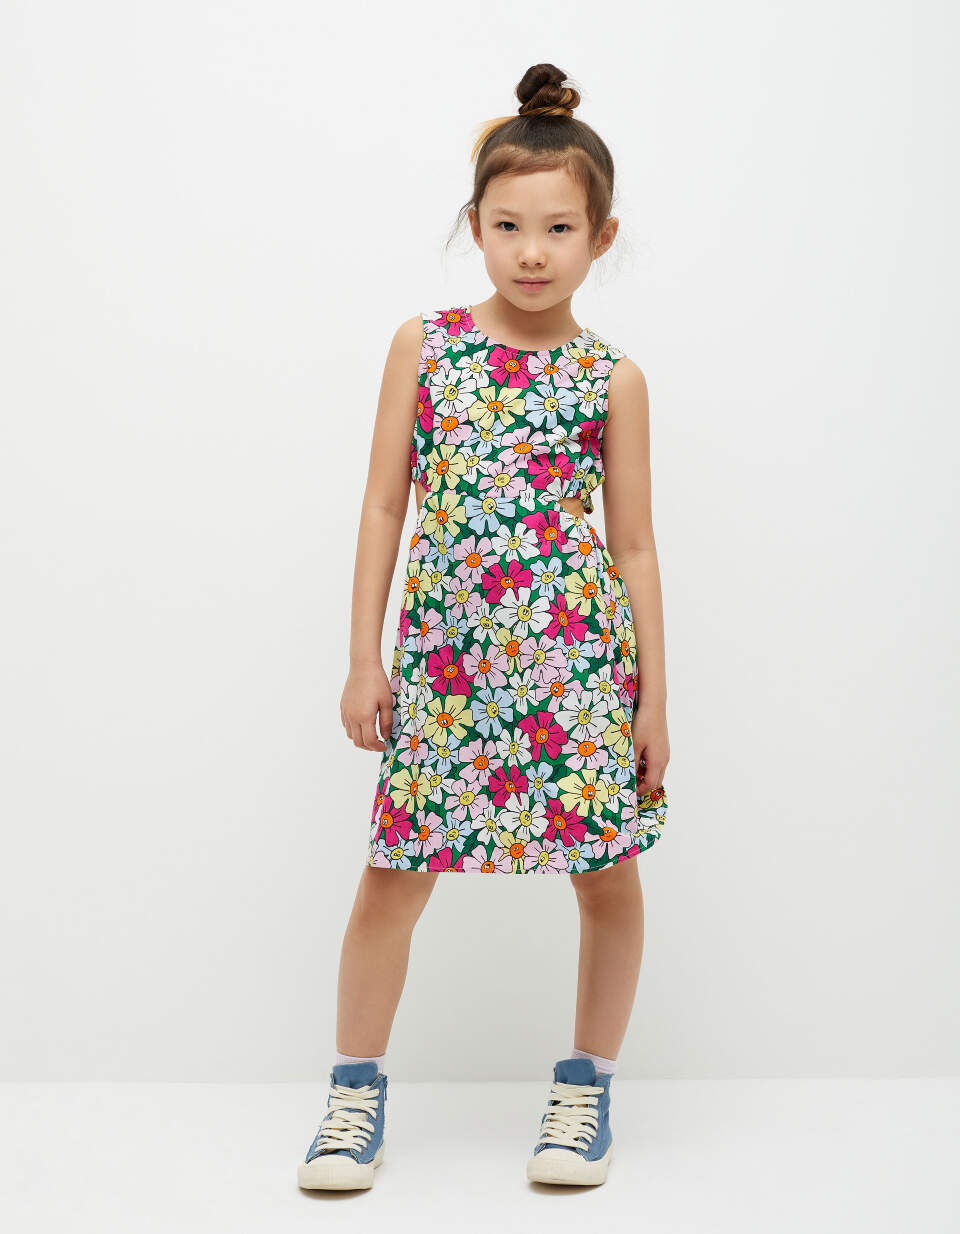 Хлопковое платье с принтом для девочек платье хлопковое с принтом бежевый 4 года